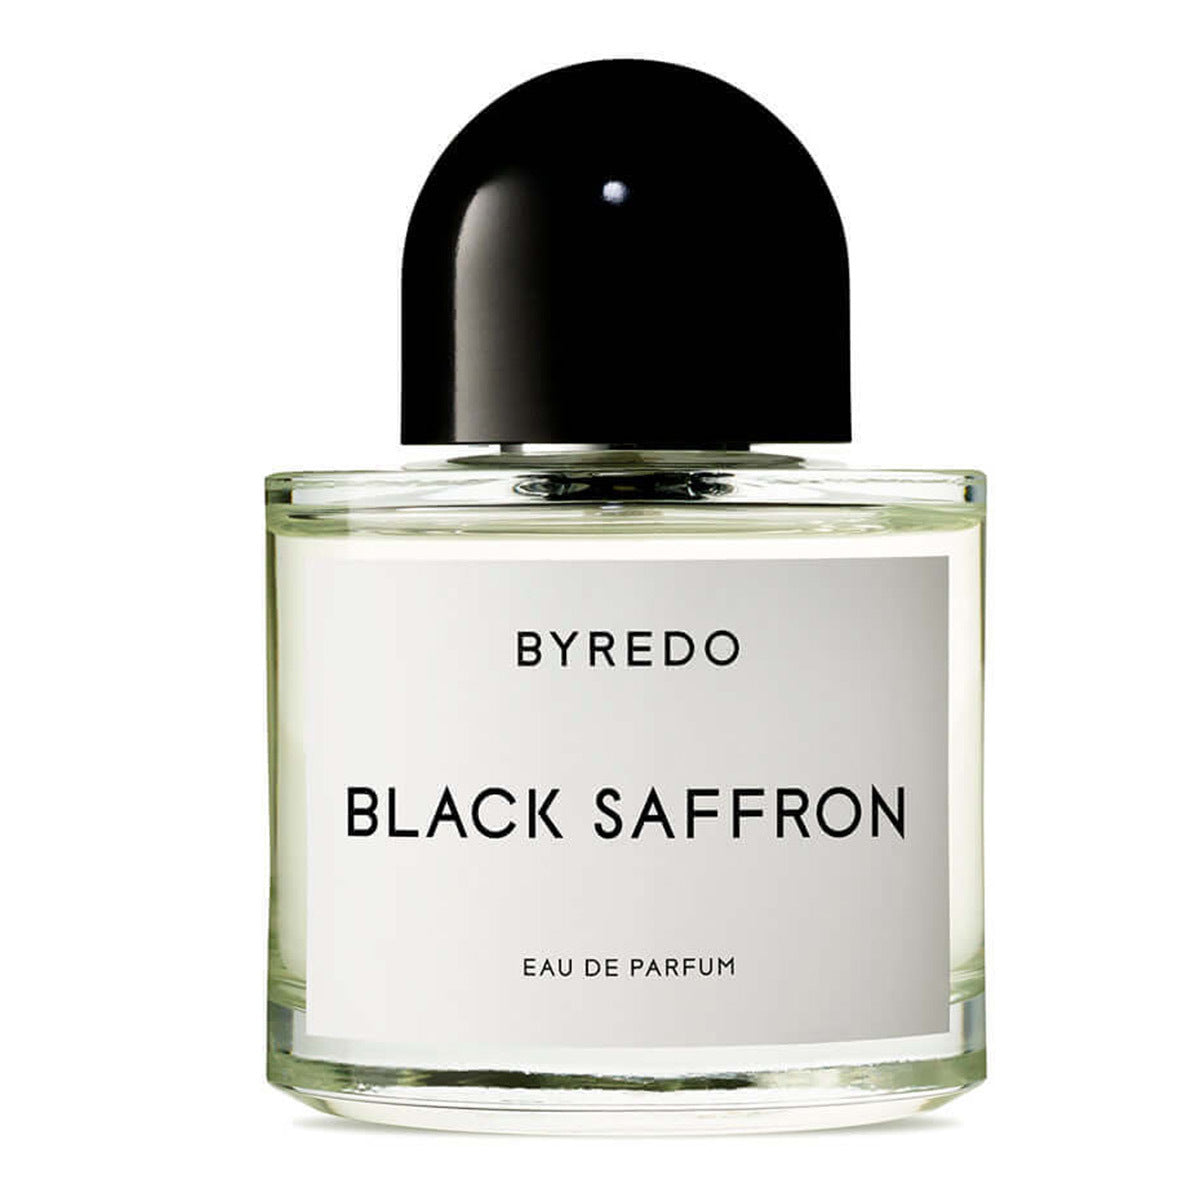 Primary image of Black Saffron Eau de Parfum